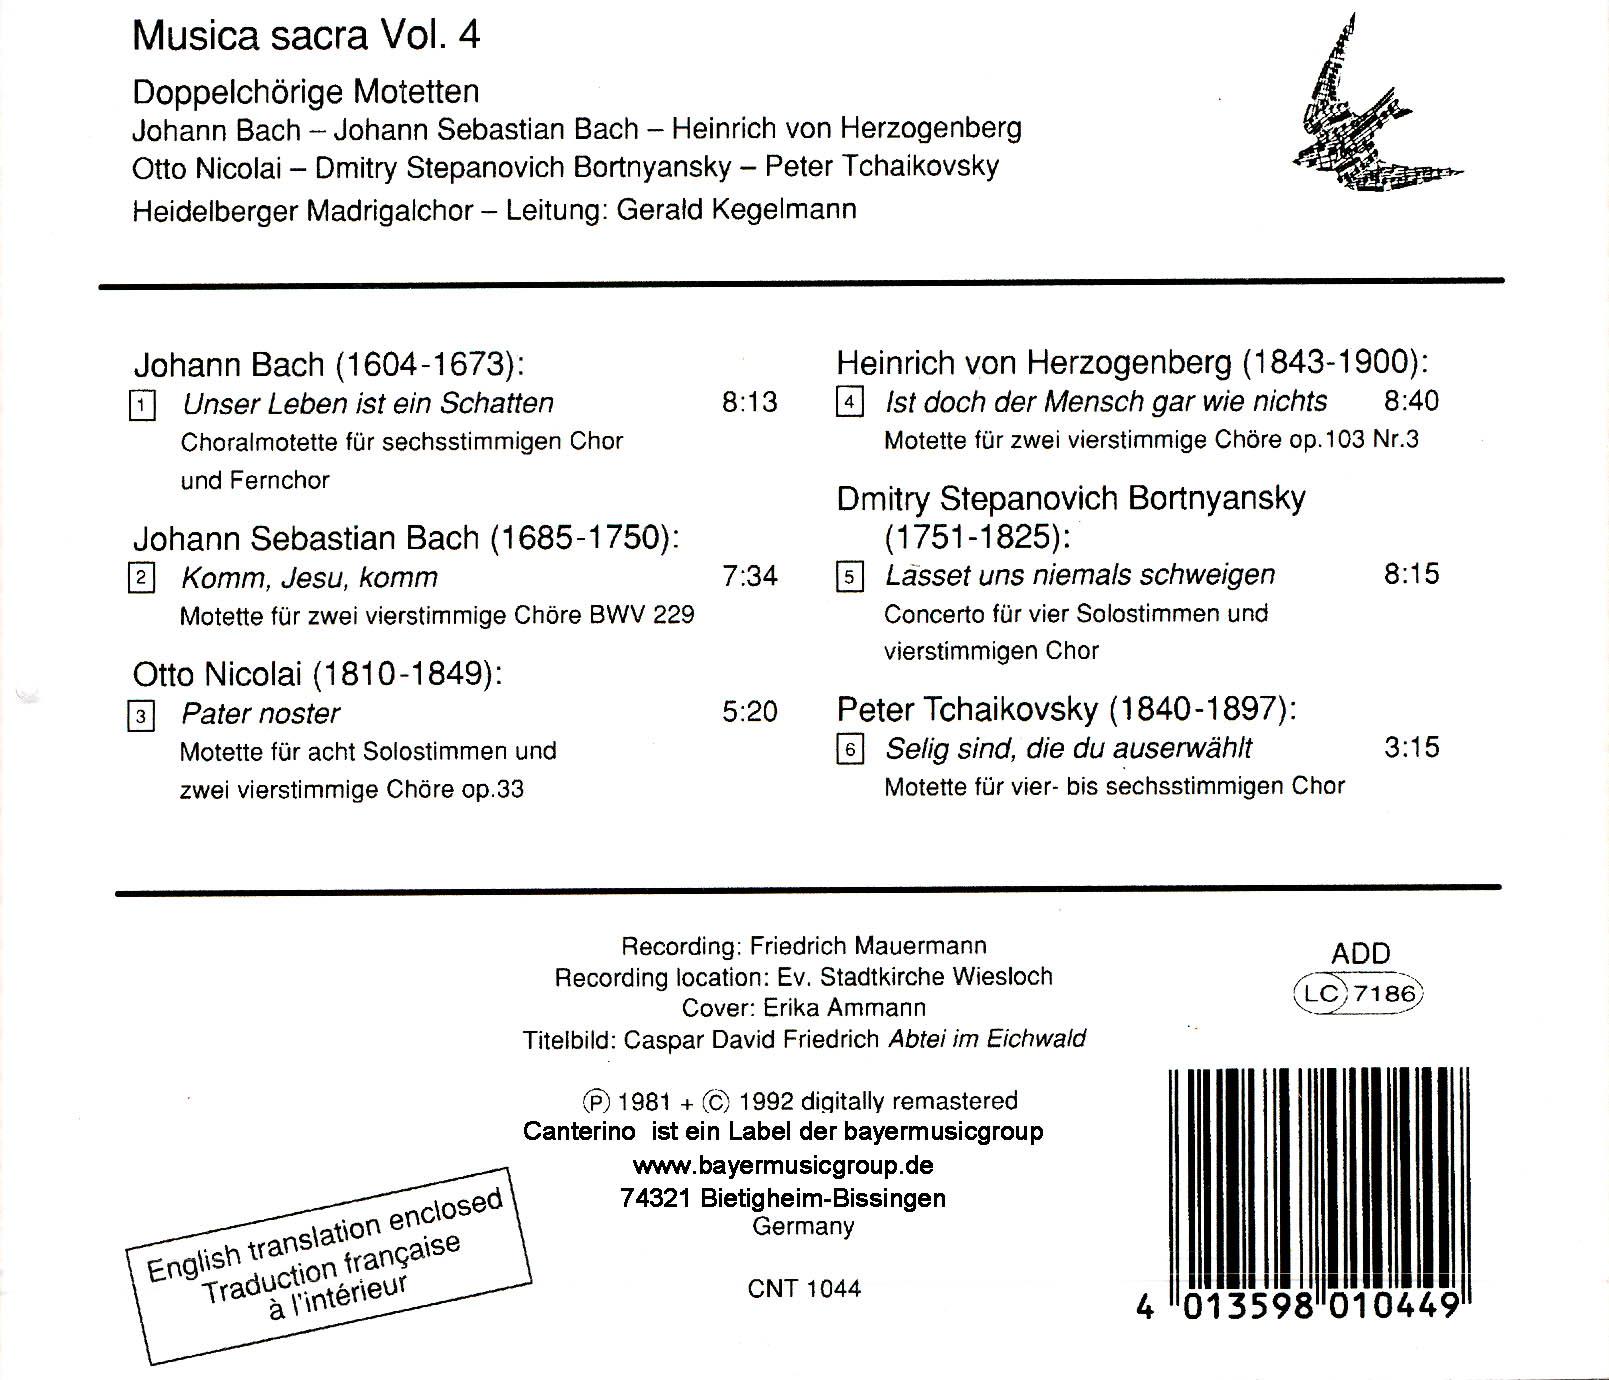 Musica sacra Vol. 4: Doppelchörige Motetten